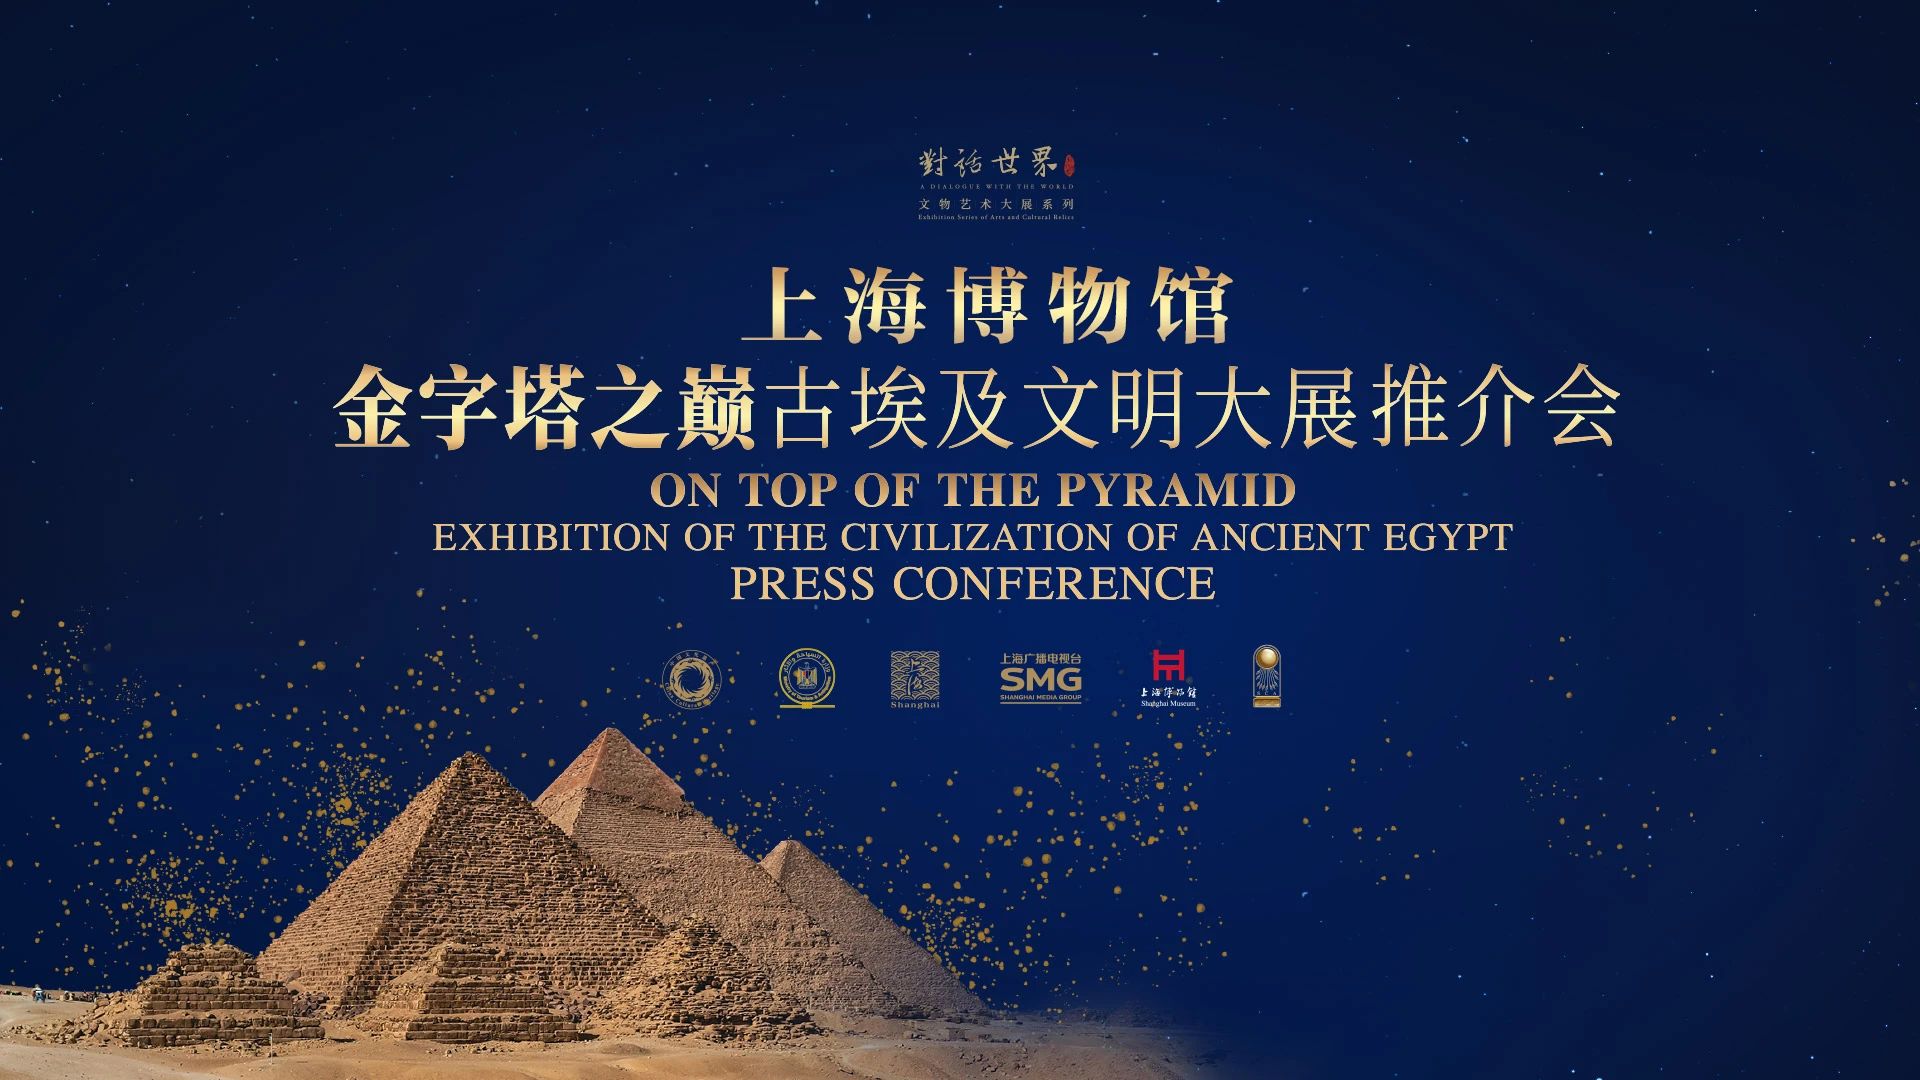 金字塔之巅：古埃及文明大展”将于7月18日在上博盛大启幕，半小时内售出 1.5 万张早鸟票！